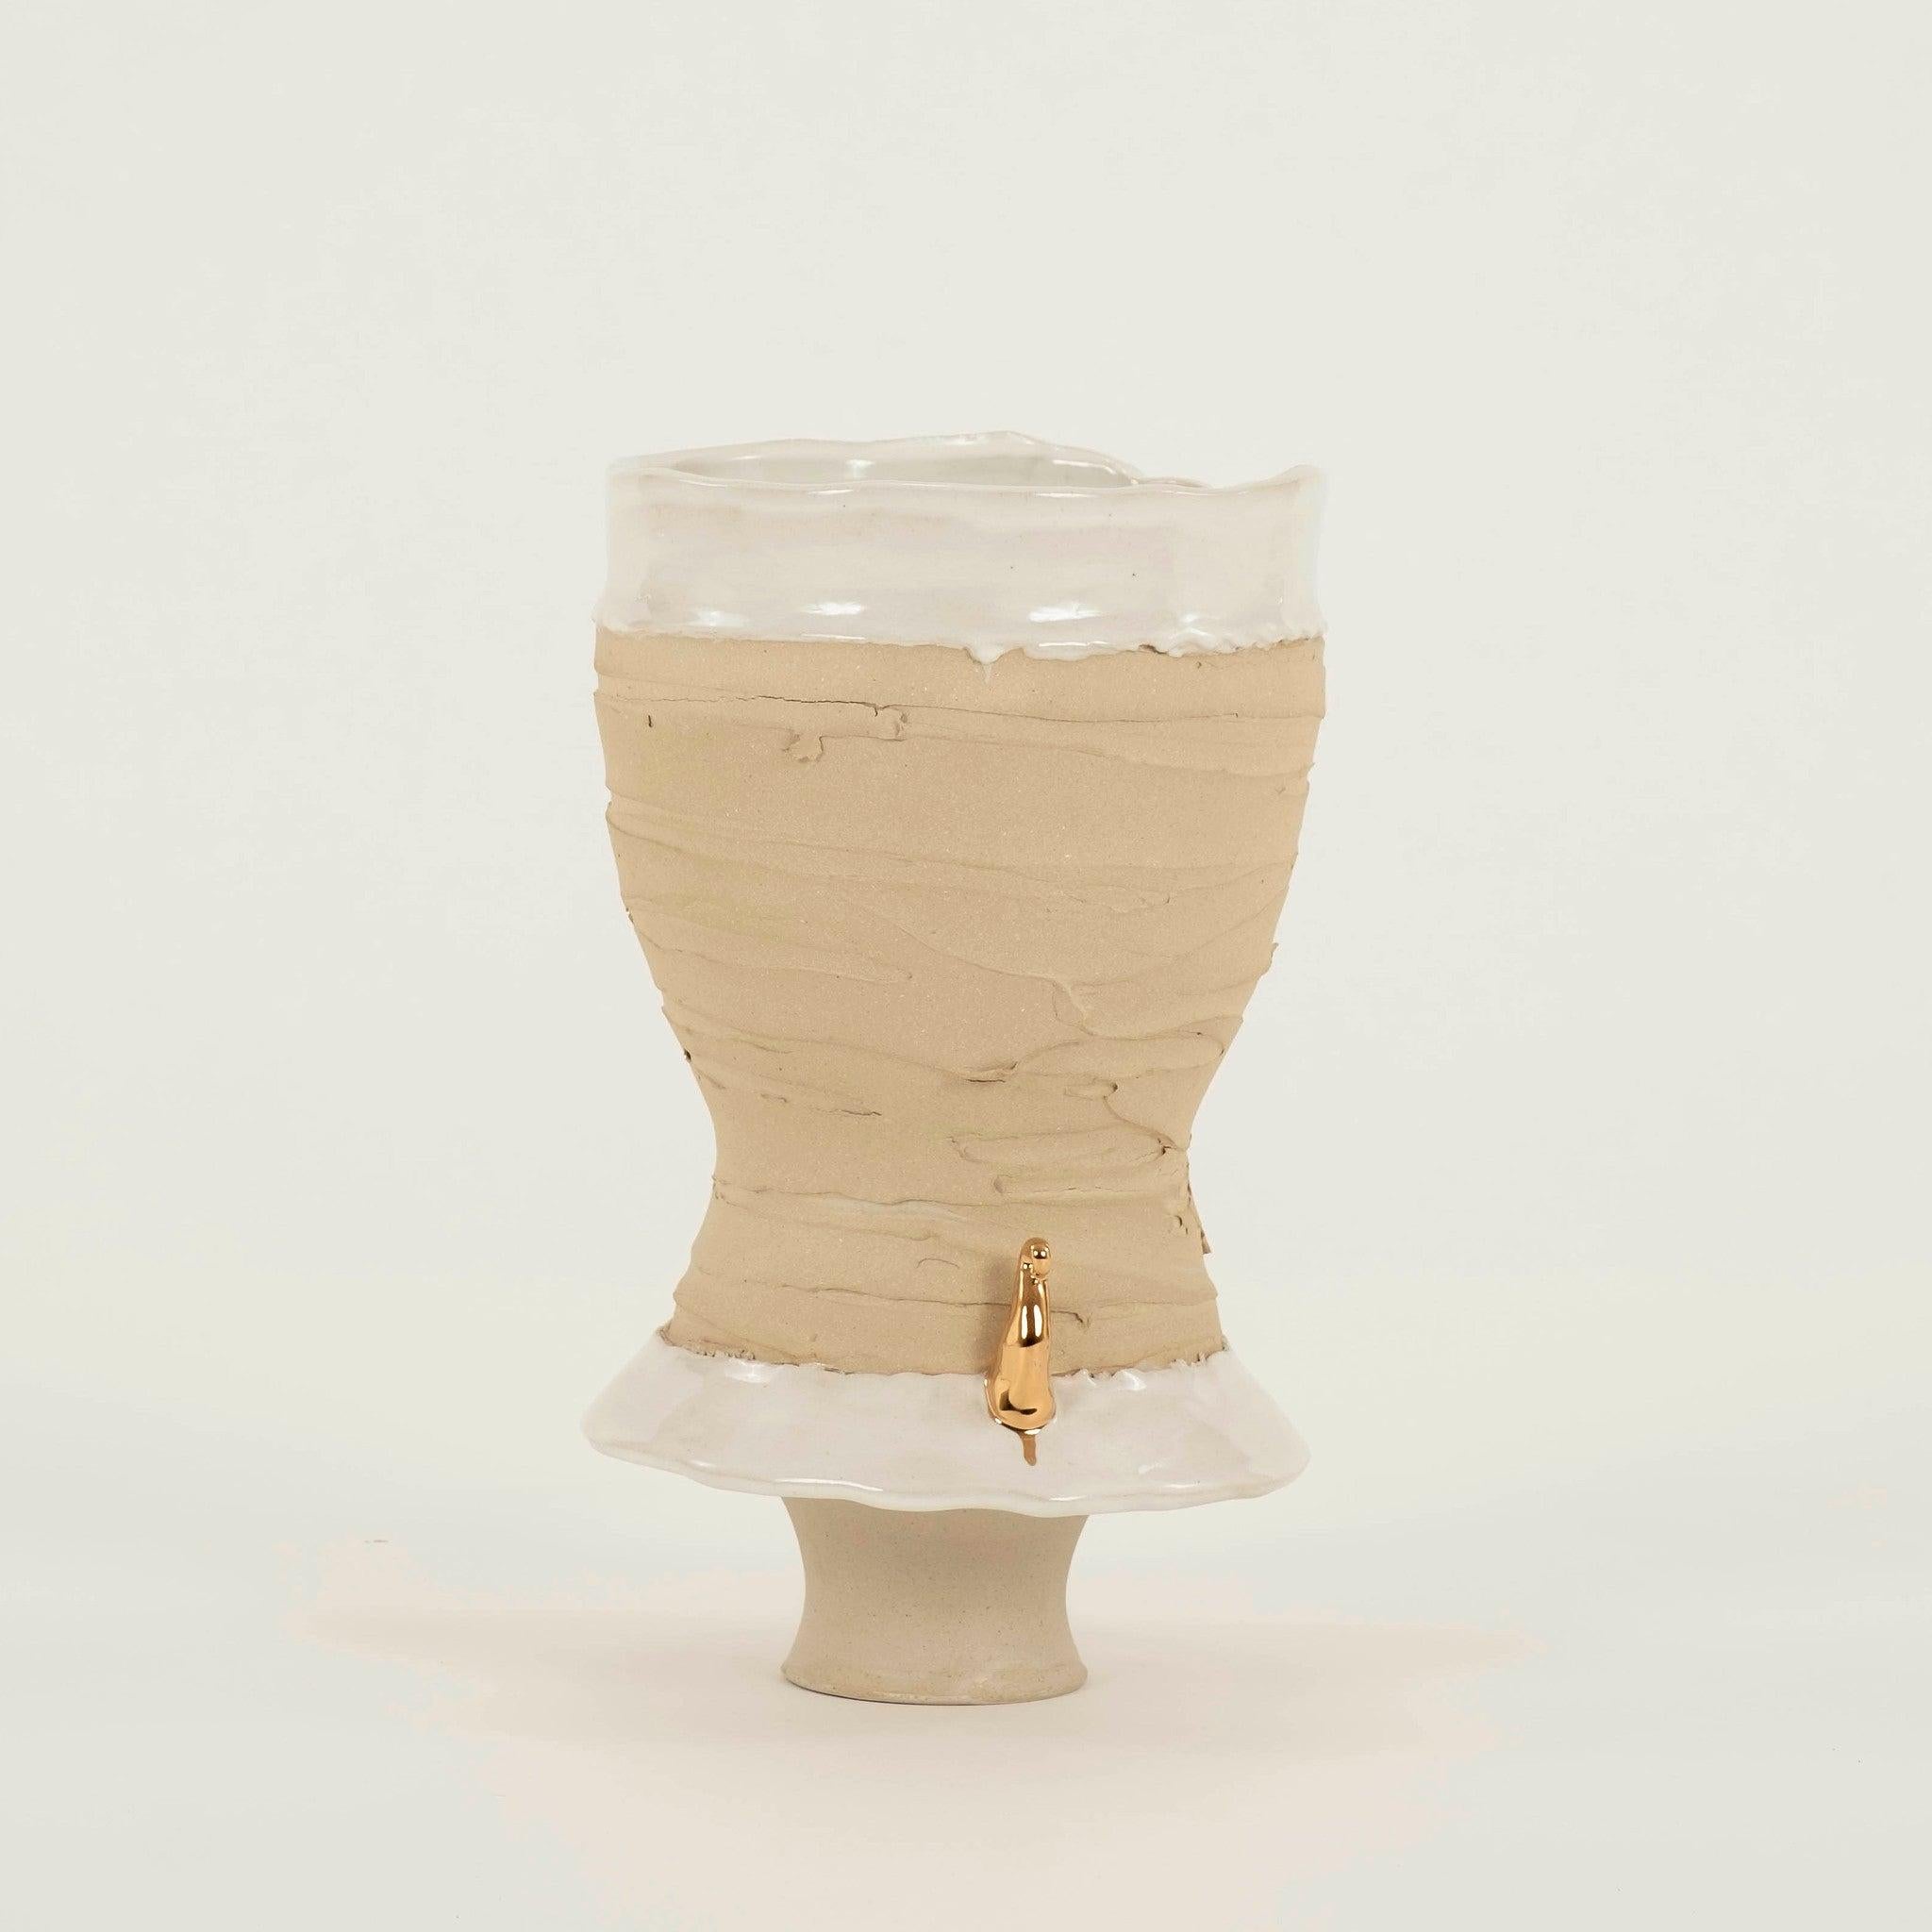 Organic Modern Chase Gamblin Splash of Gold Taupe Porcelain Urn Vase